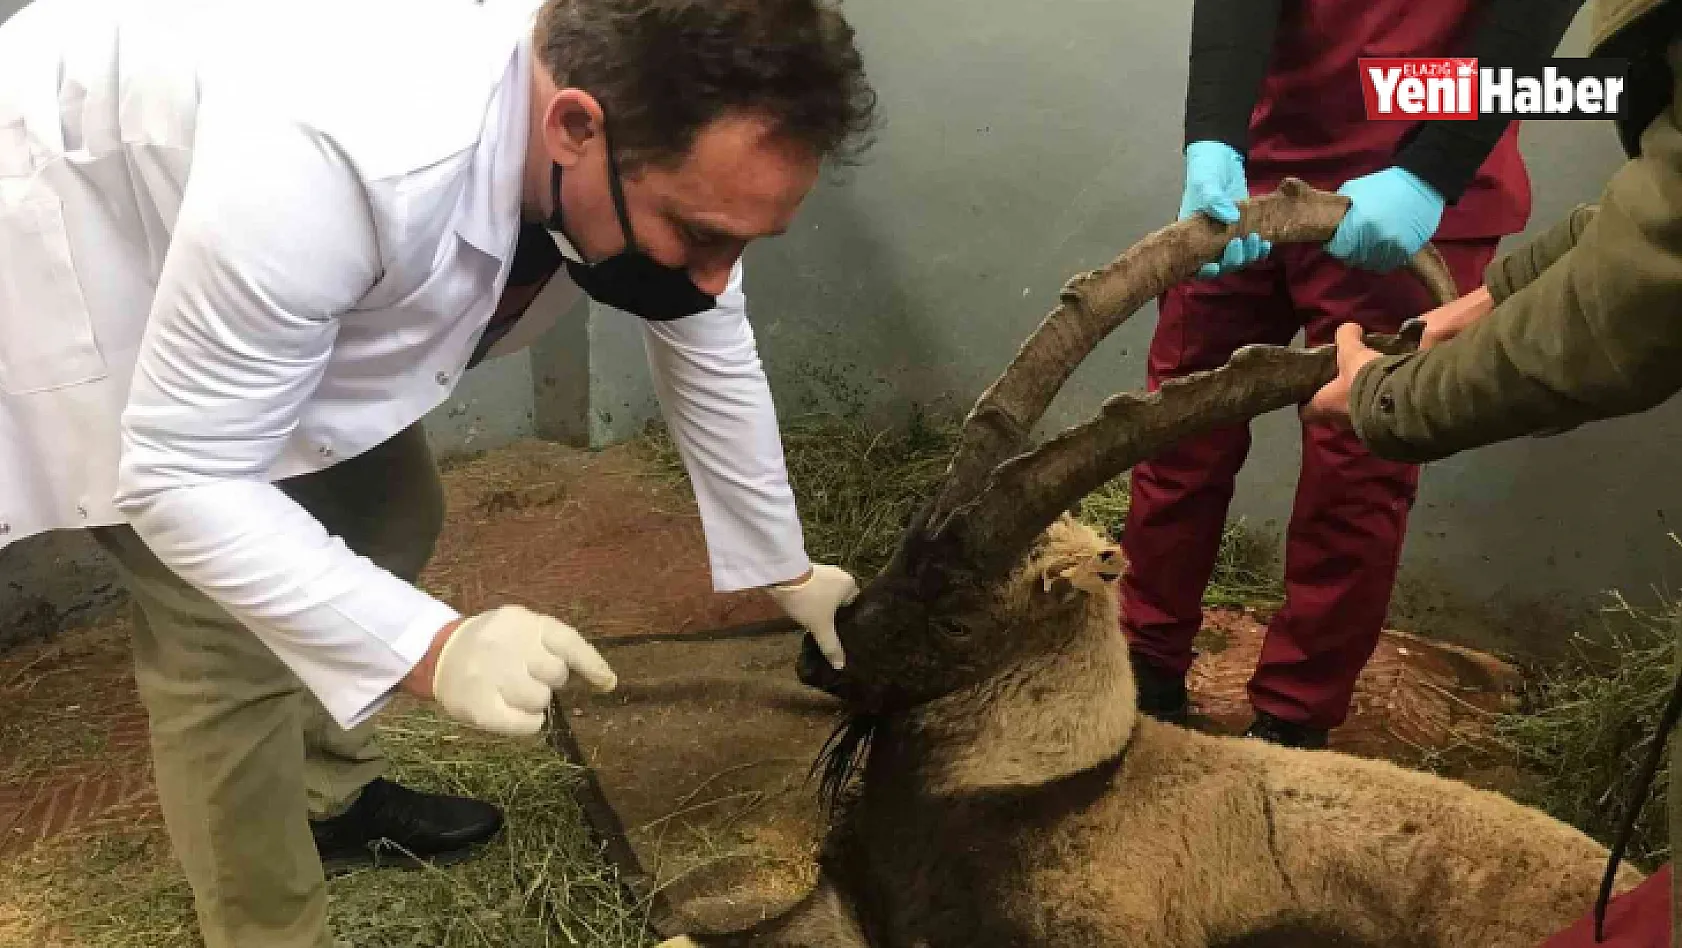 Yaralı halde bulunan dağ keçisi tedavi altına alındı